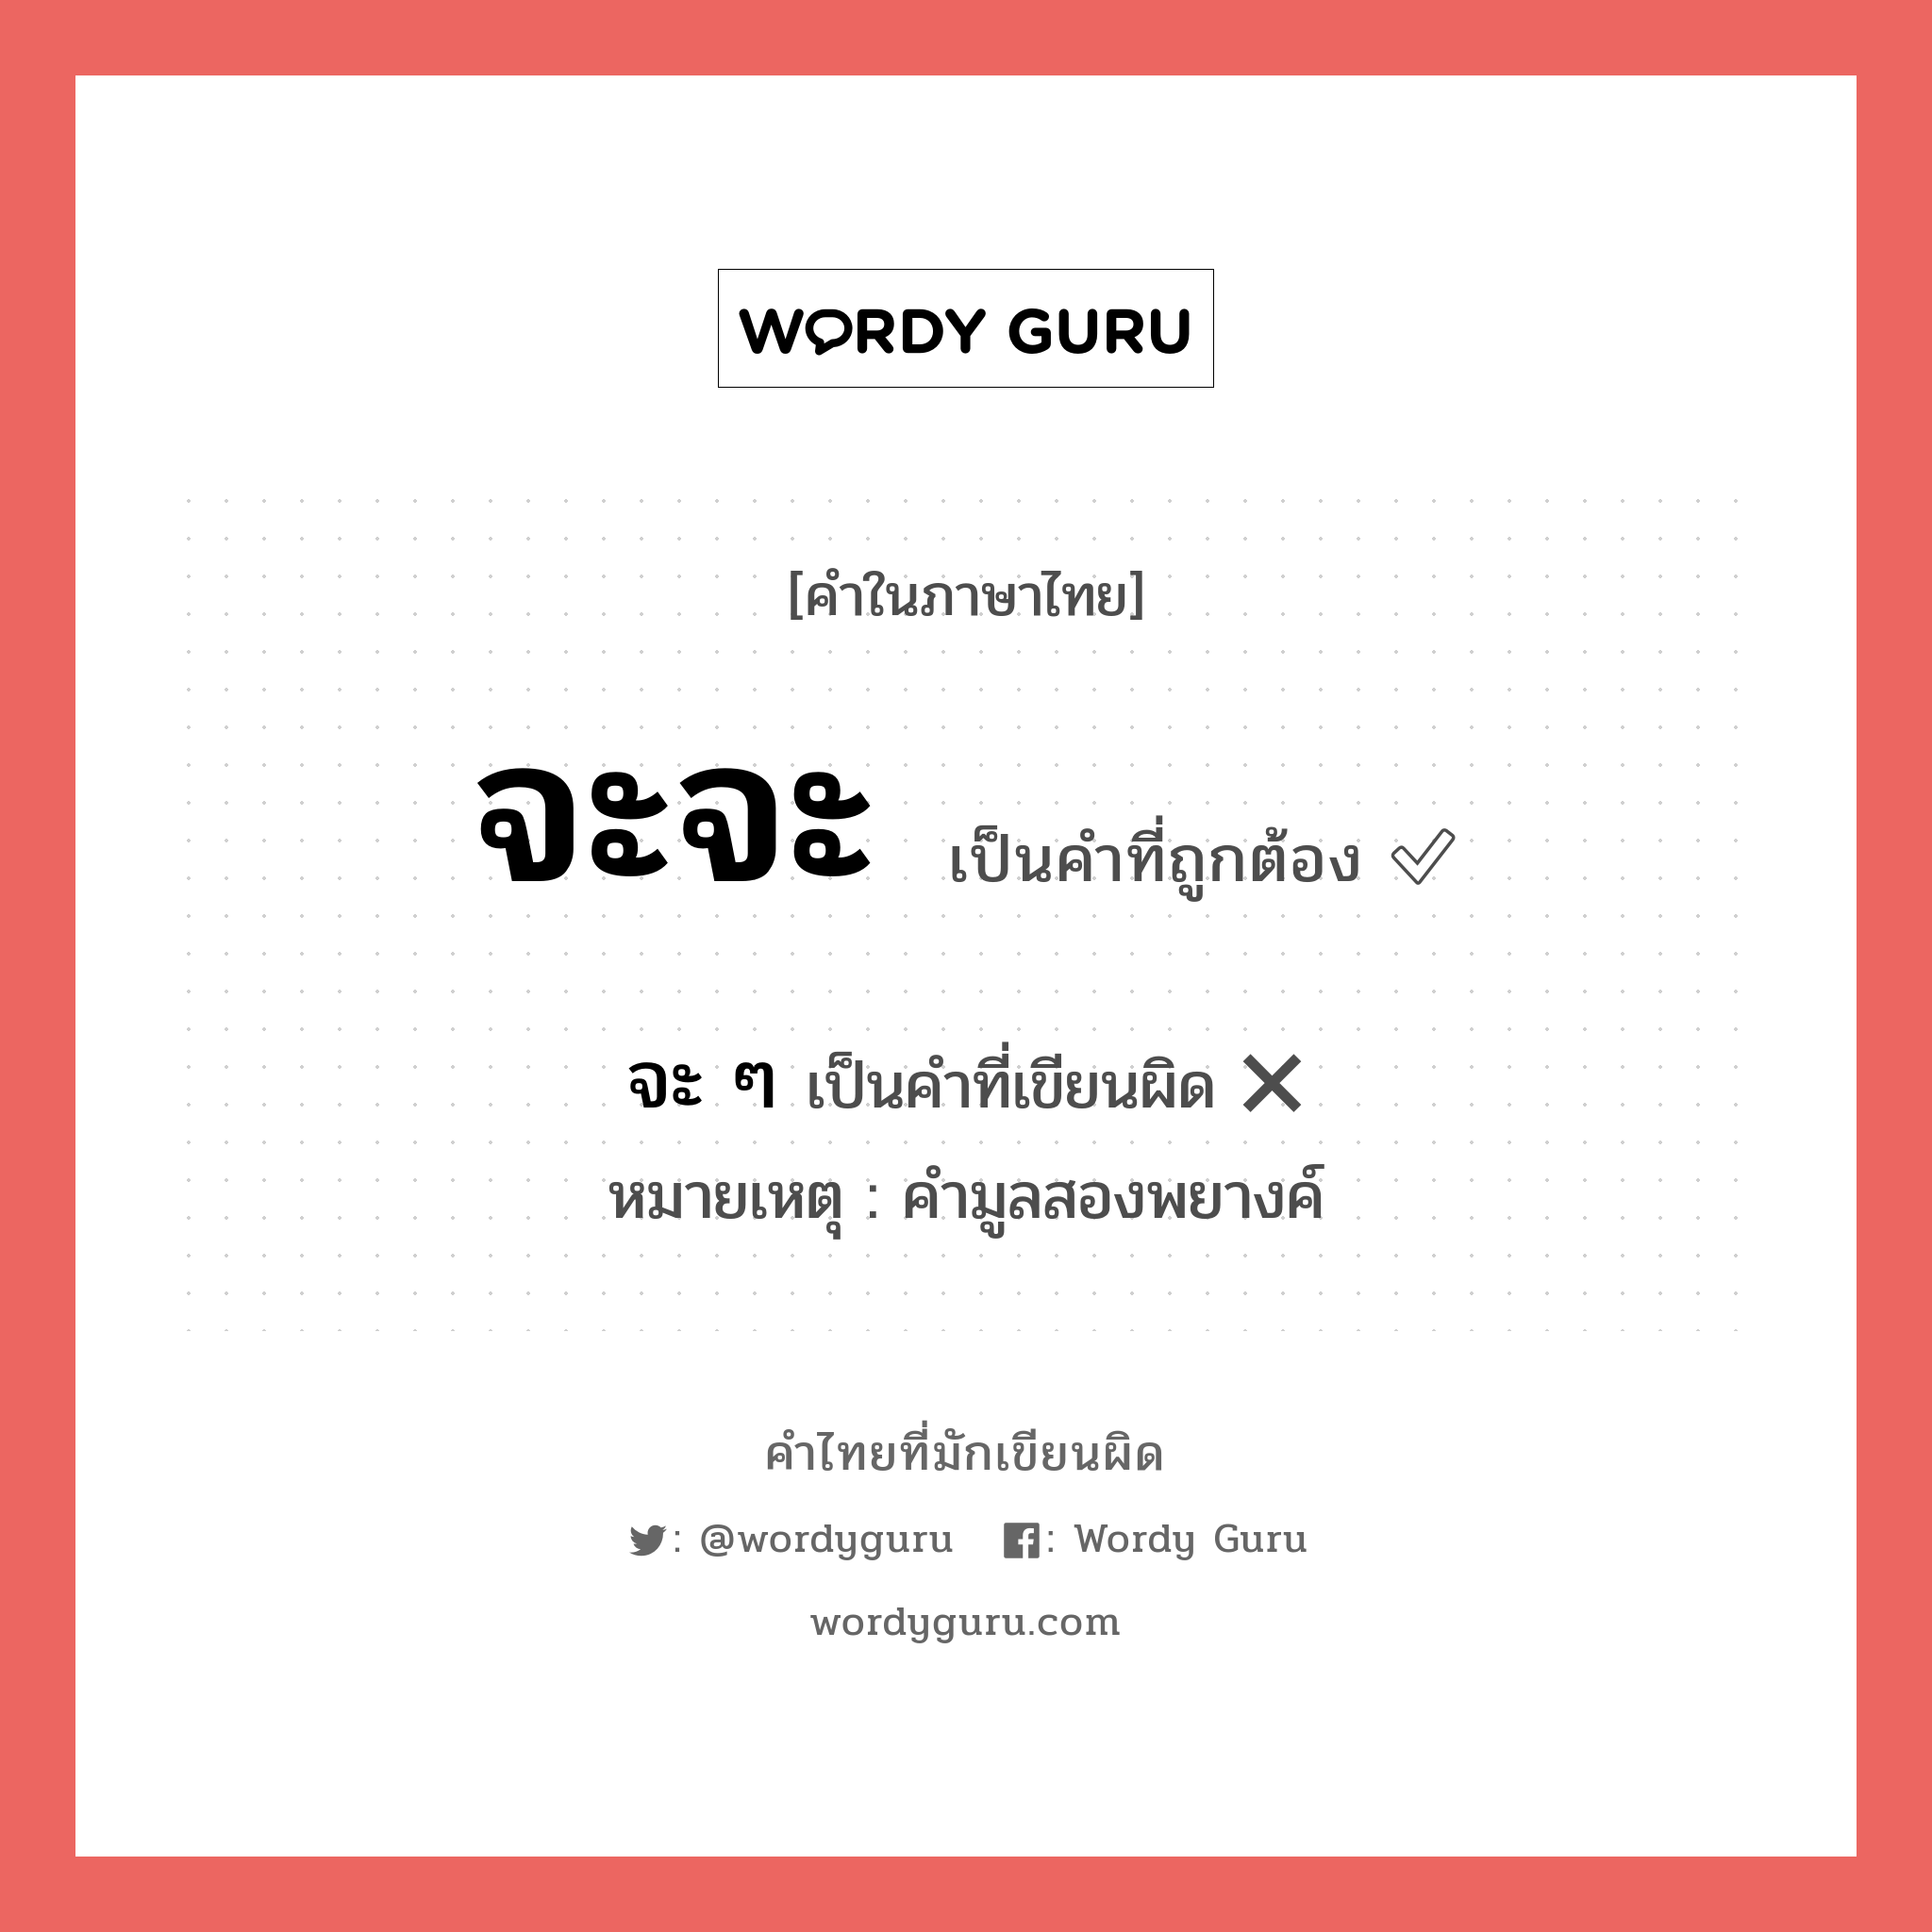 จะจะ หรือ จะ ๆ คำไหนเขียนถูก?, คำในภาษาไทยที่มักเขียนผิด จะจะ คำที่ผิด ❌ จะ ๆ หมายเหตุ คำมูลสองพยางค์